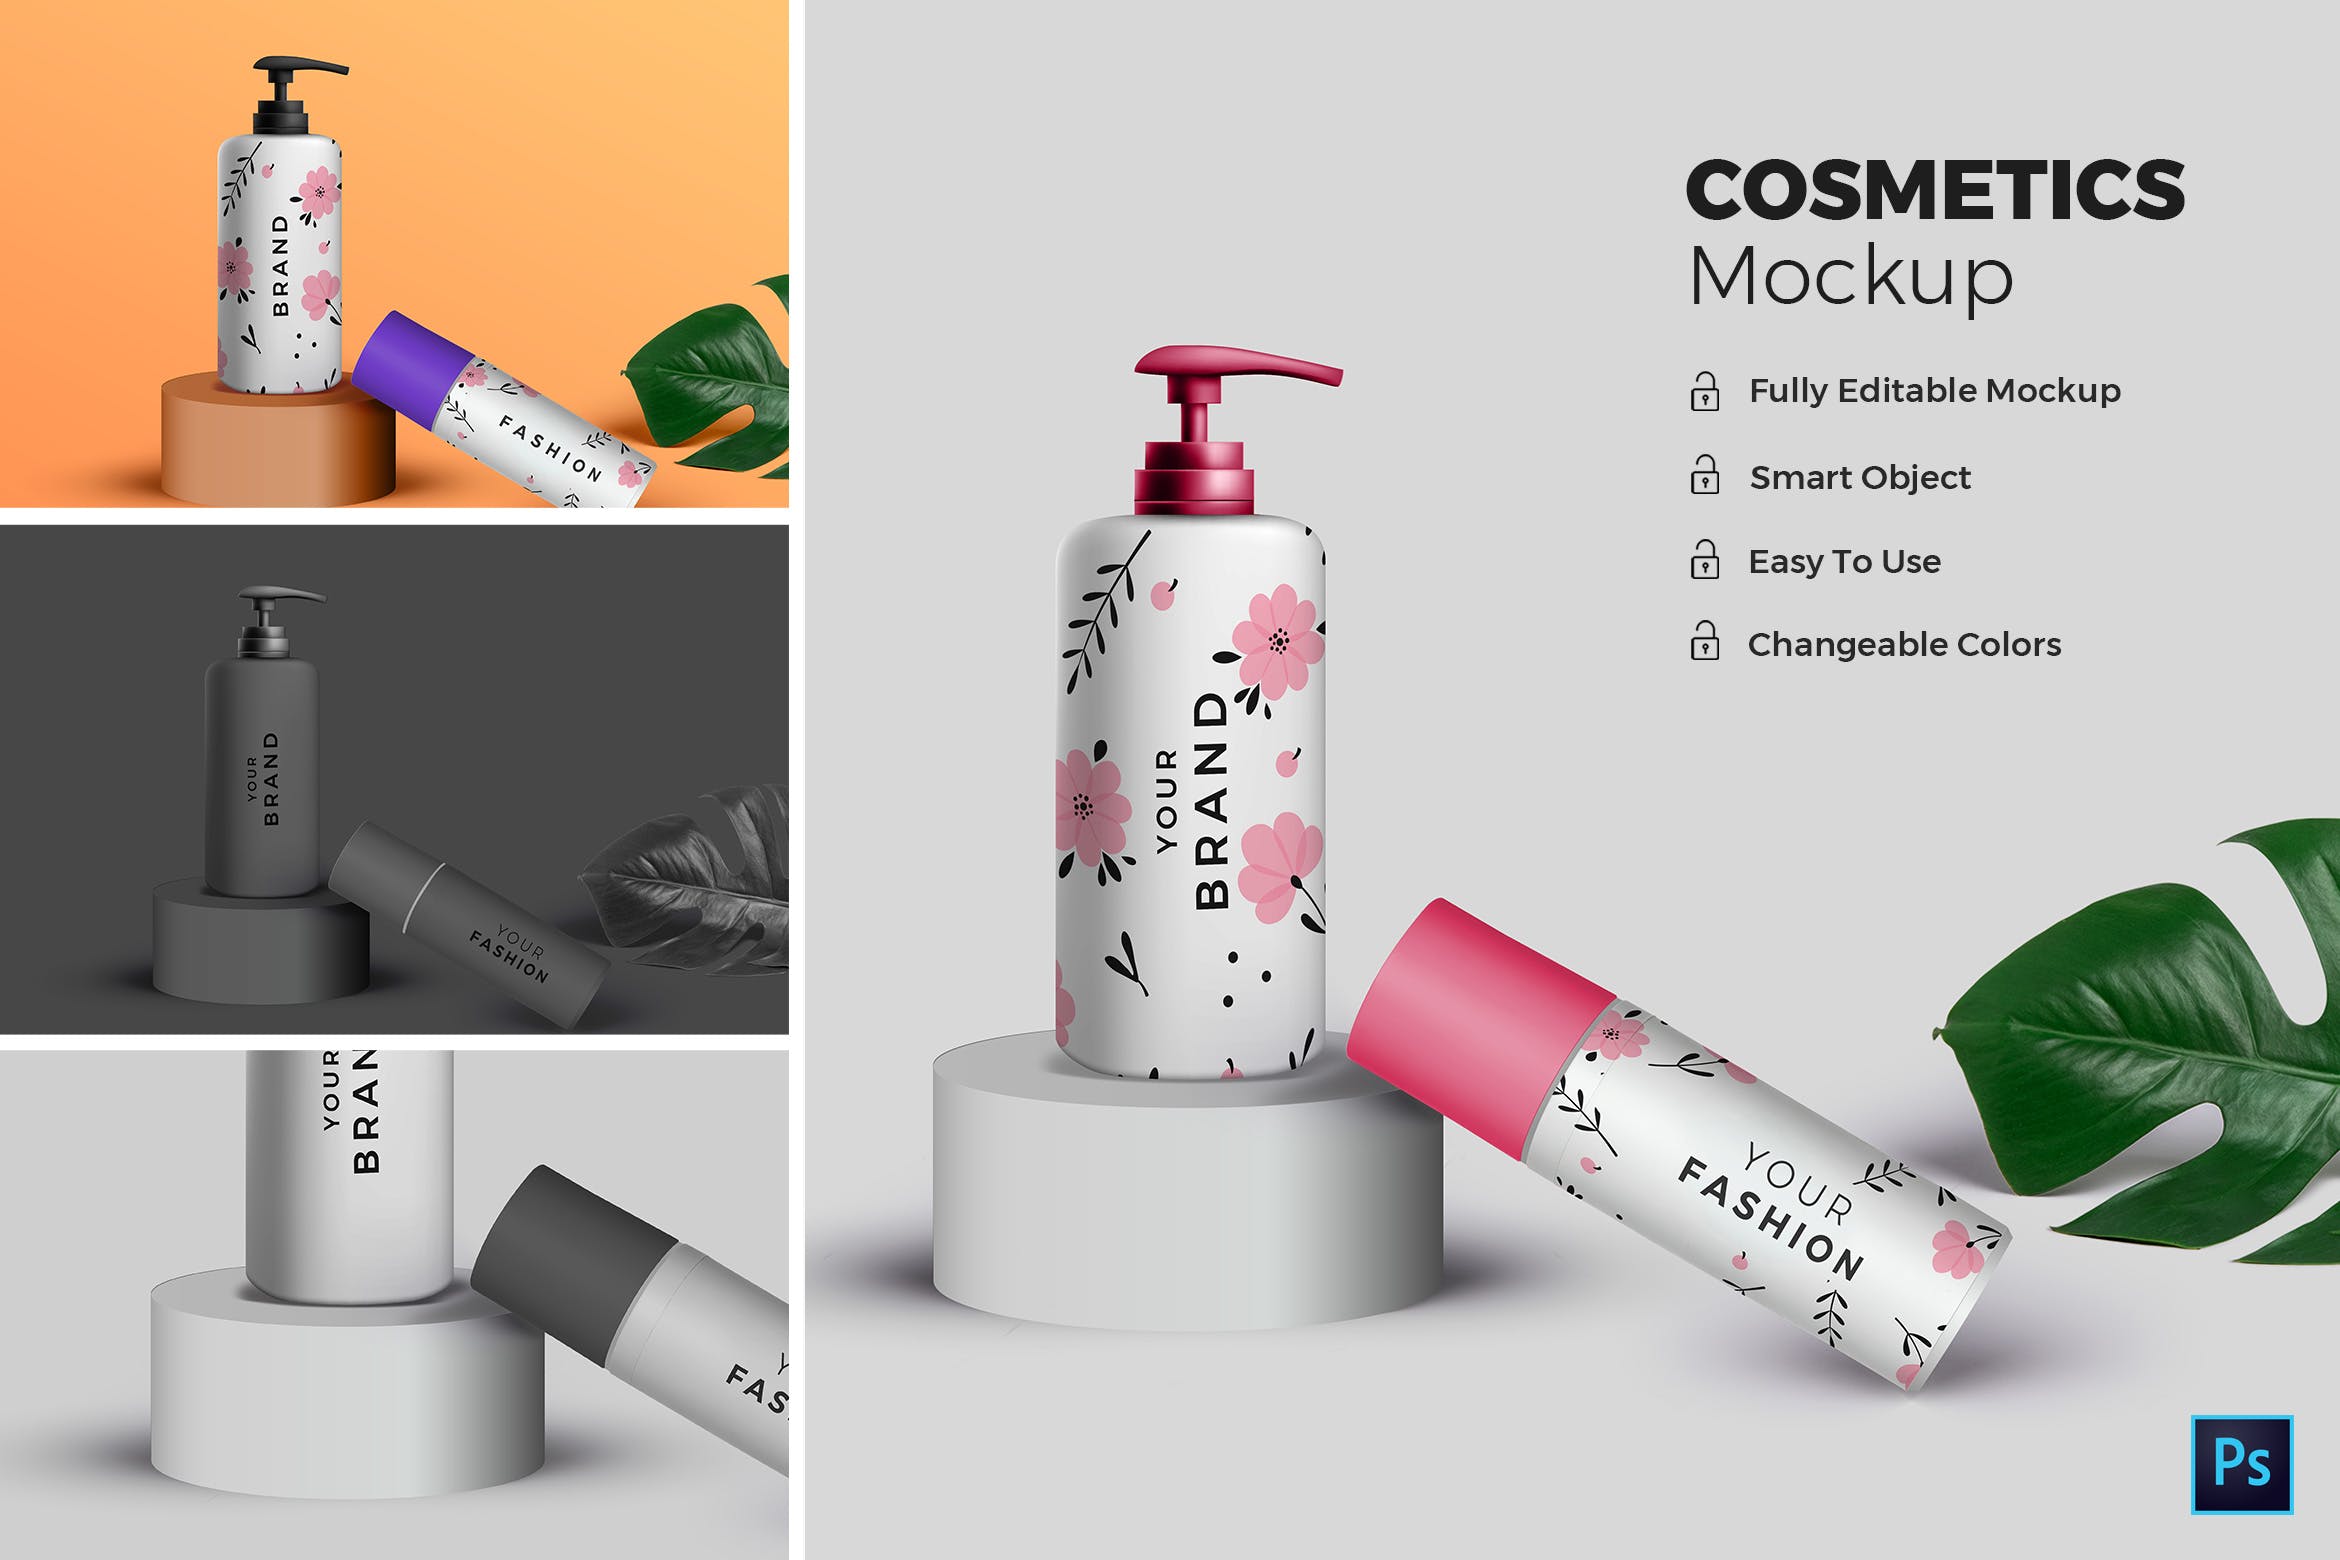 高端化妆品包装外观设计效果图素材库精选 Cosmetic Mockup插图